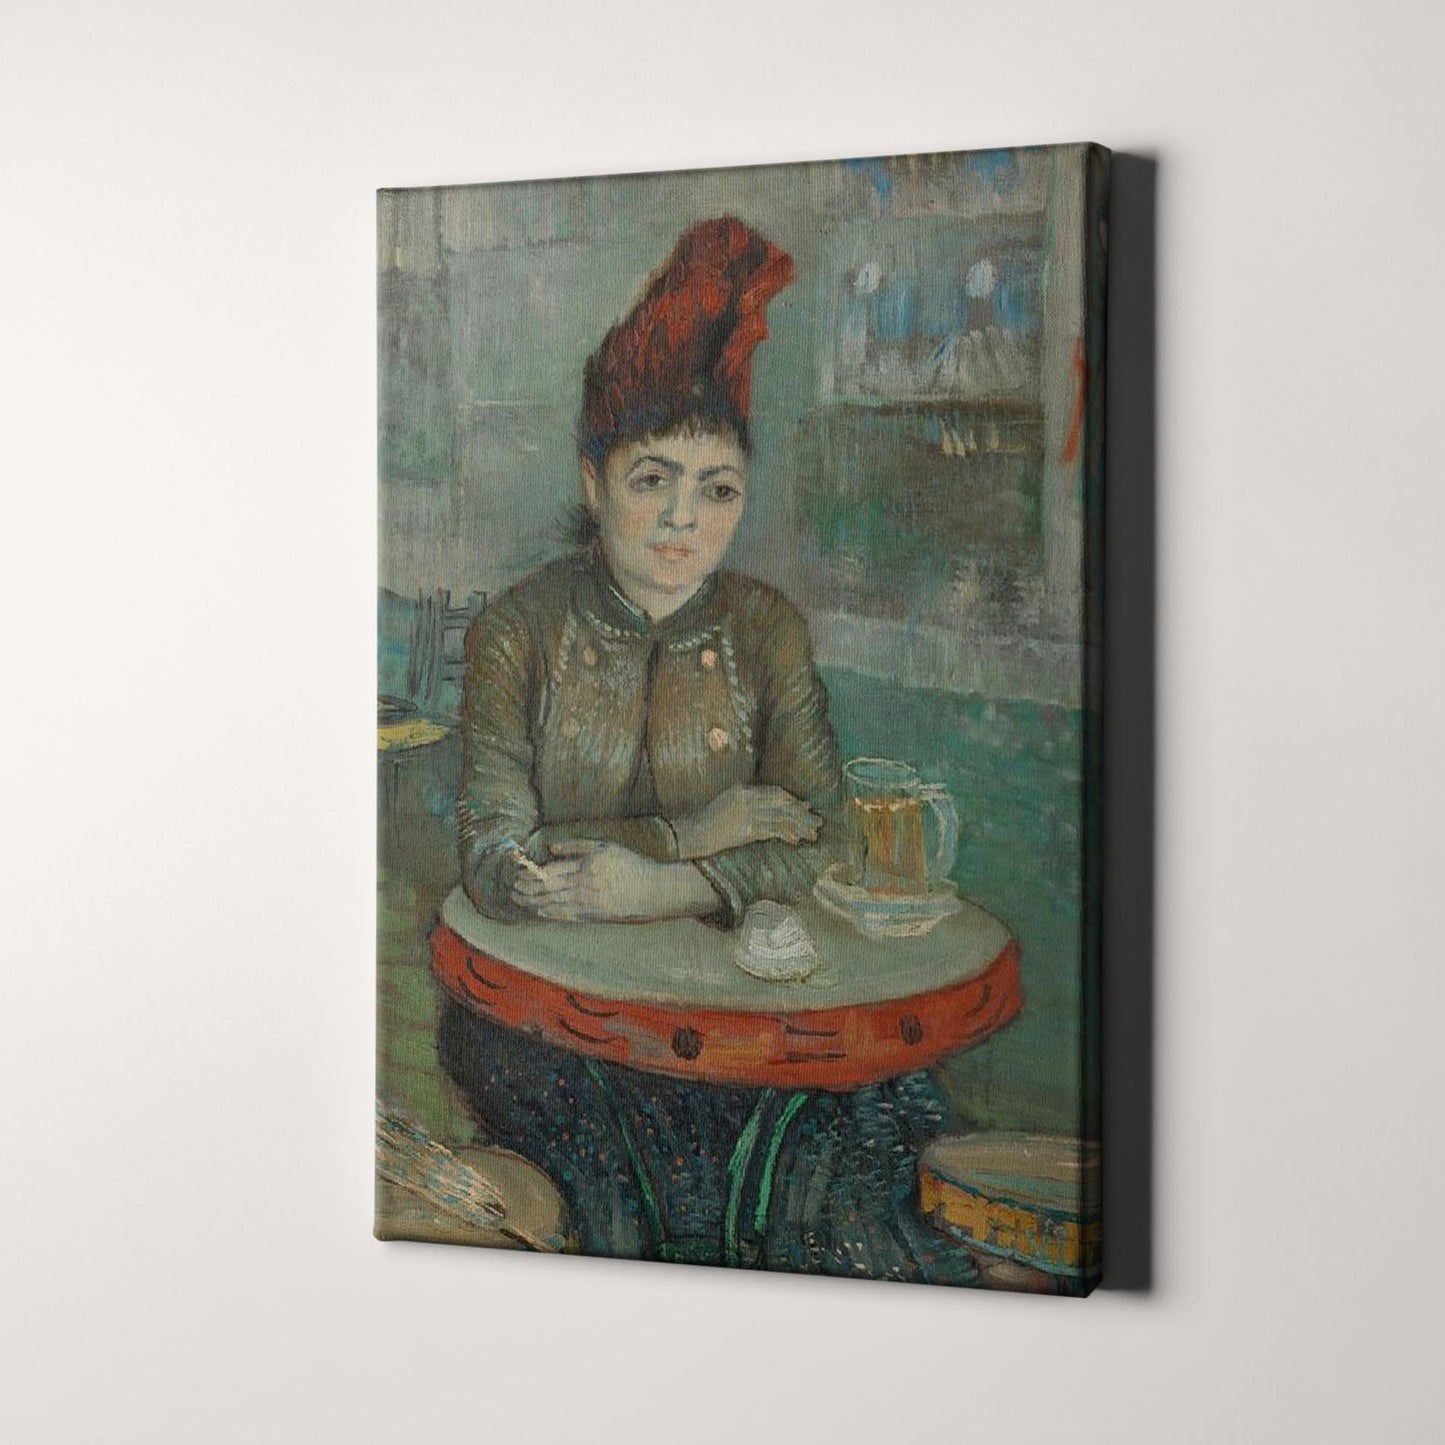 In the Café- Agostina Segatori in Le Tambourin (1887) by Van Gogh